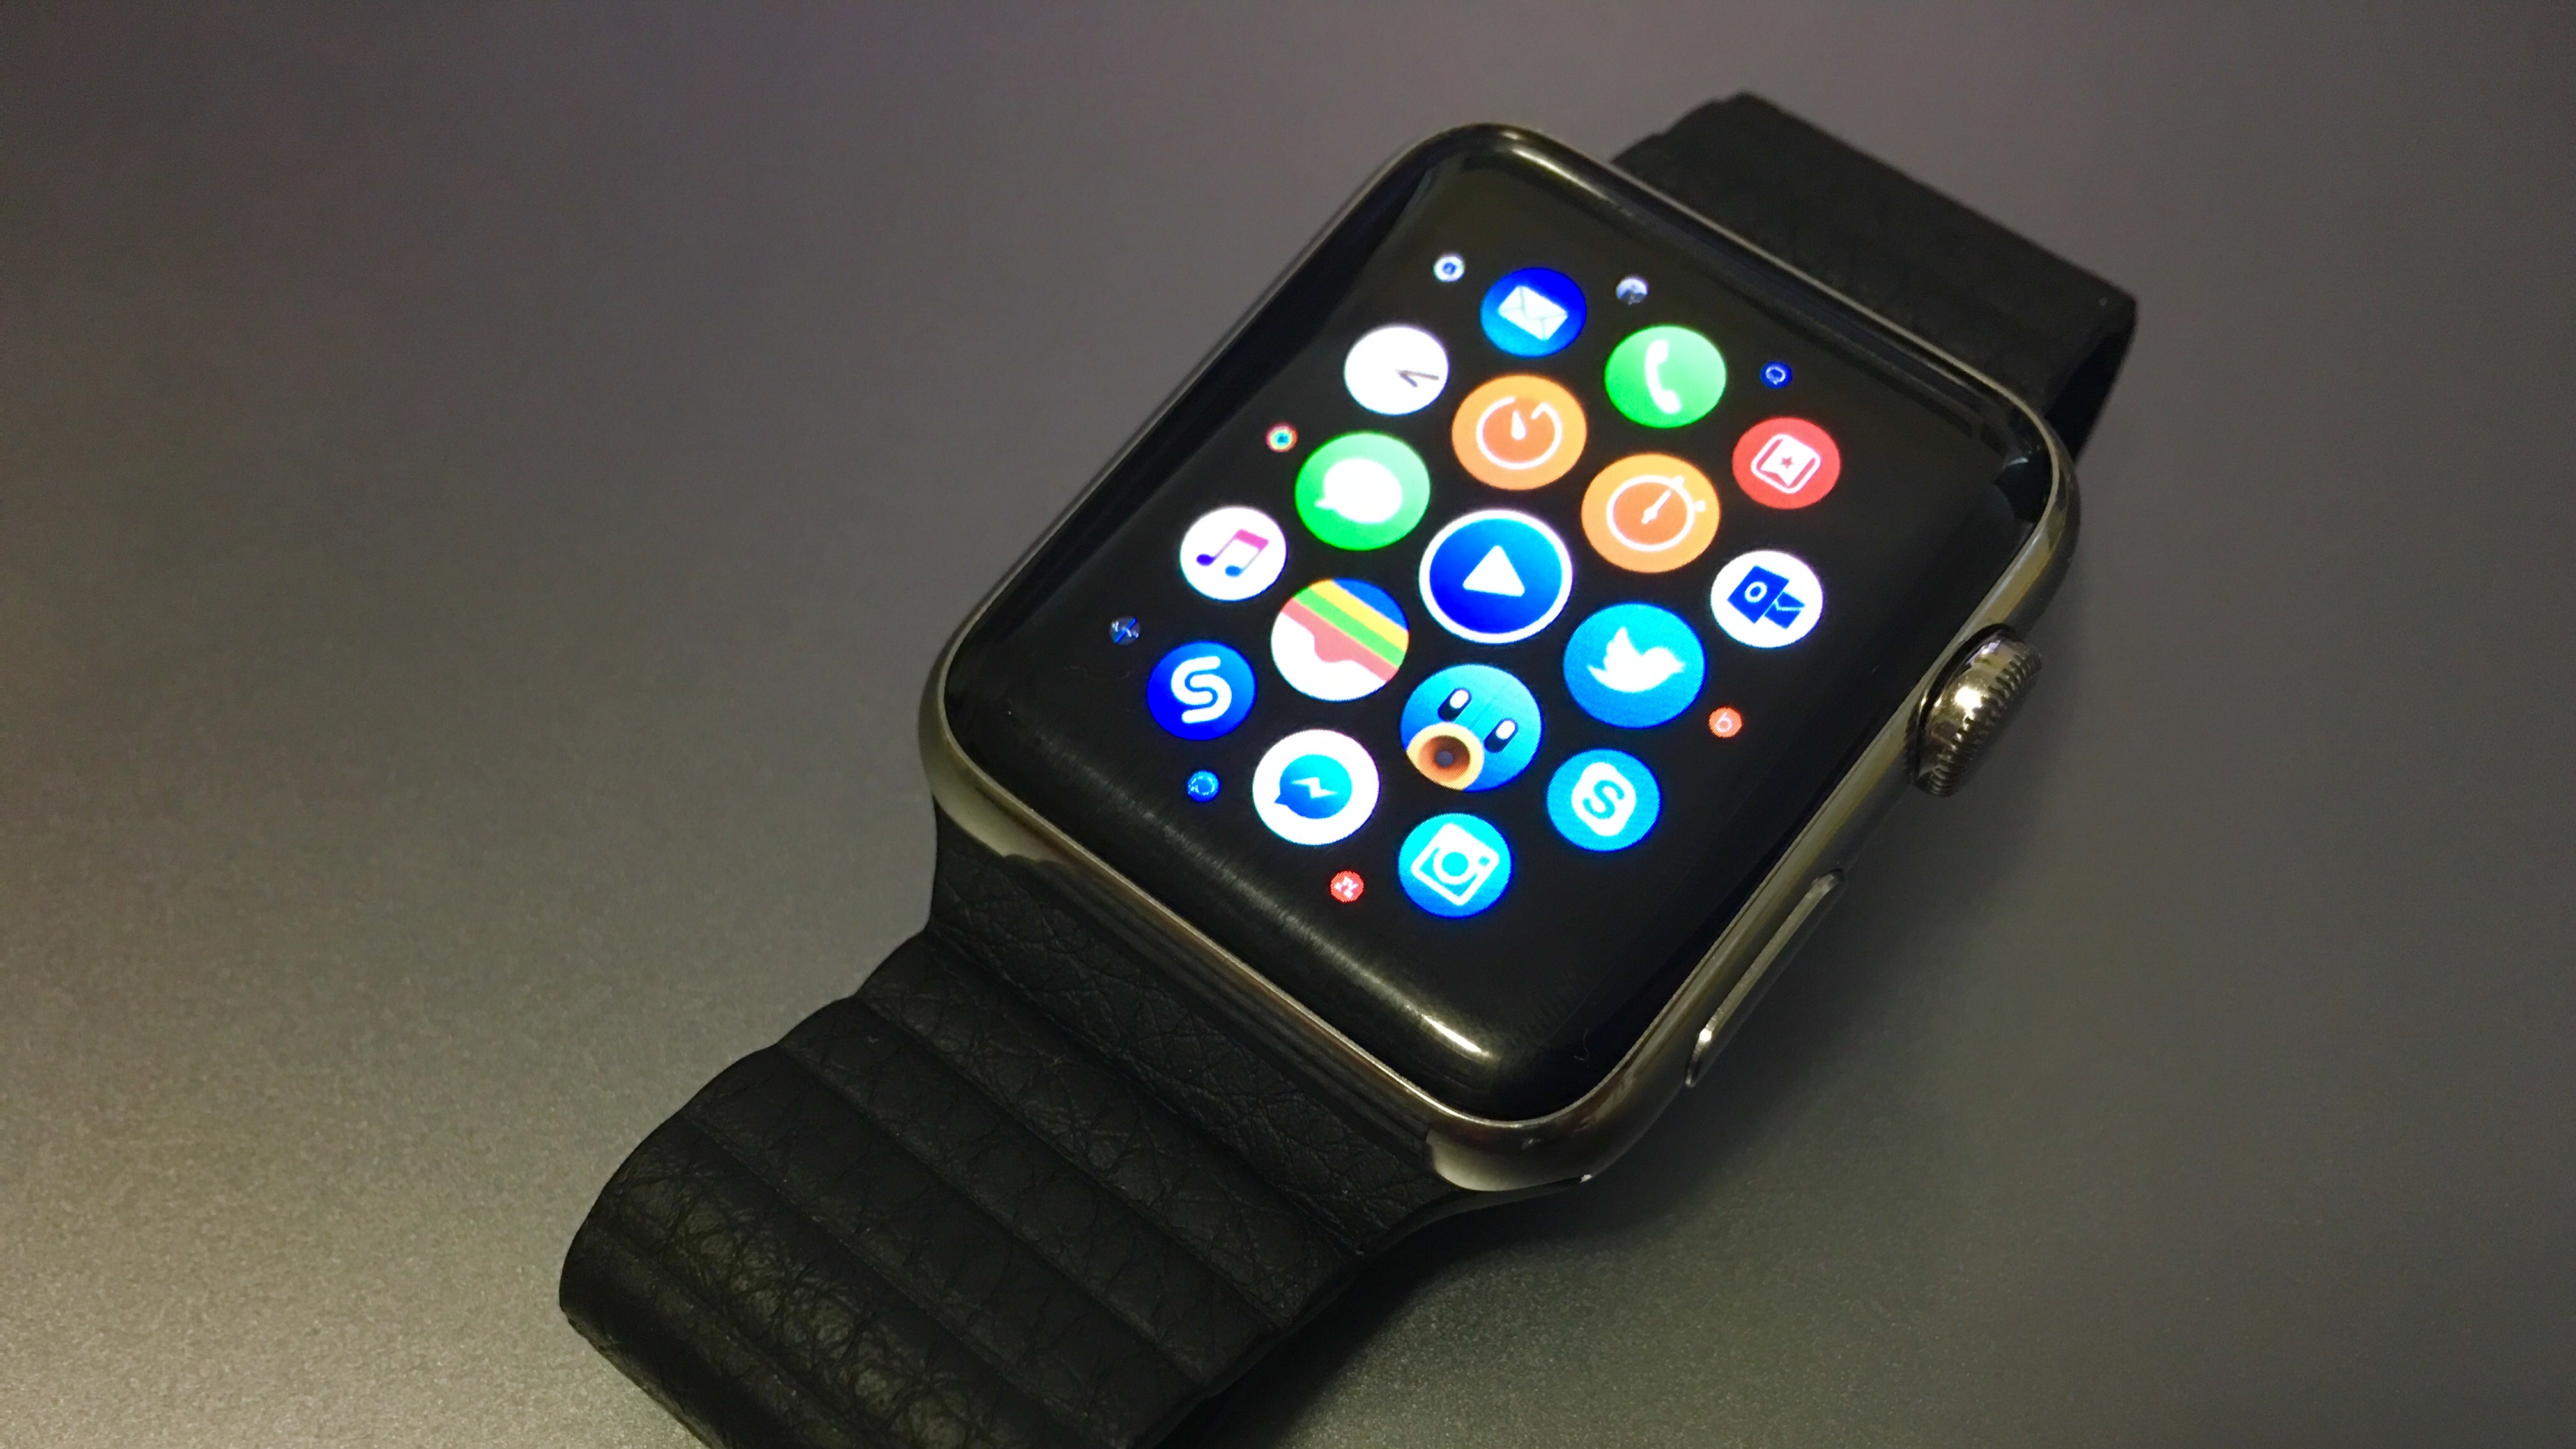 Apple Watch vanzari 7 milioane unitati